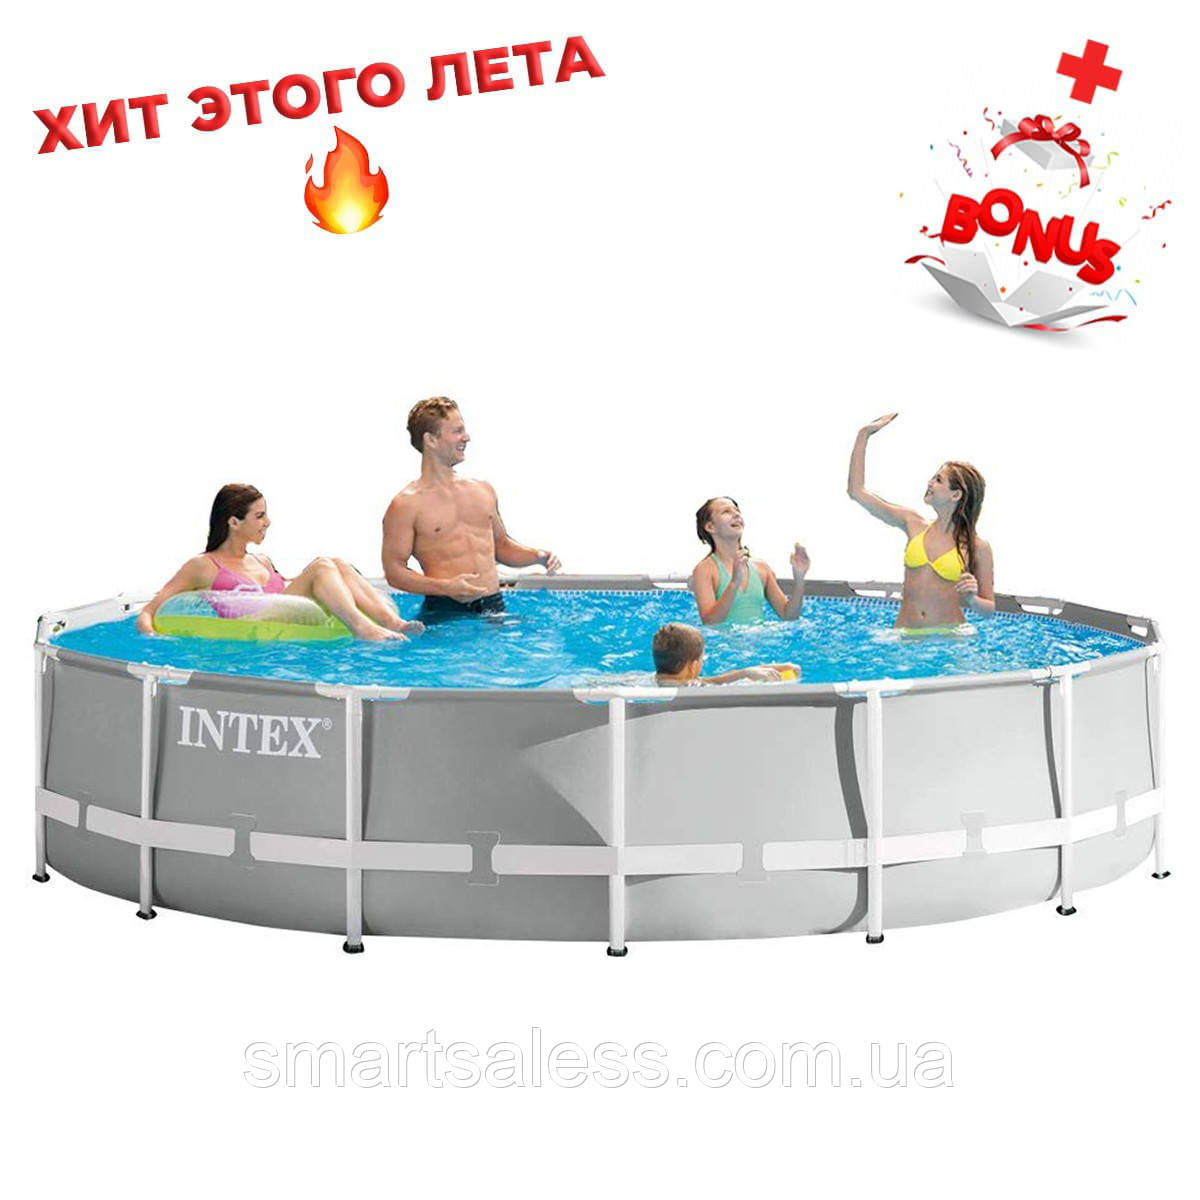 

Каркасный бассейн Intex круглый, 457 х 107 см, чаша+каркас